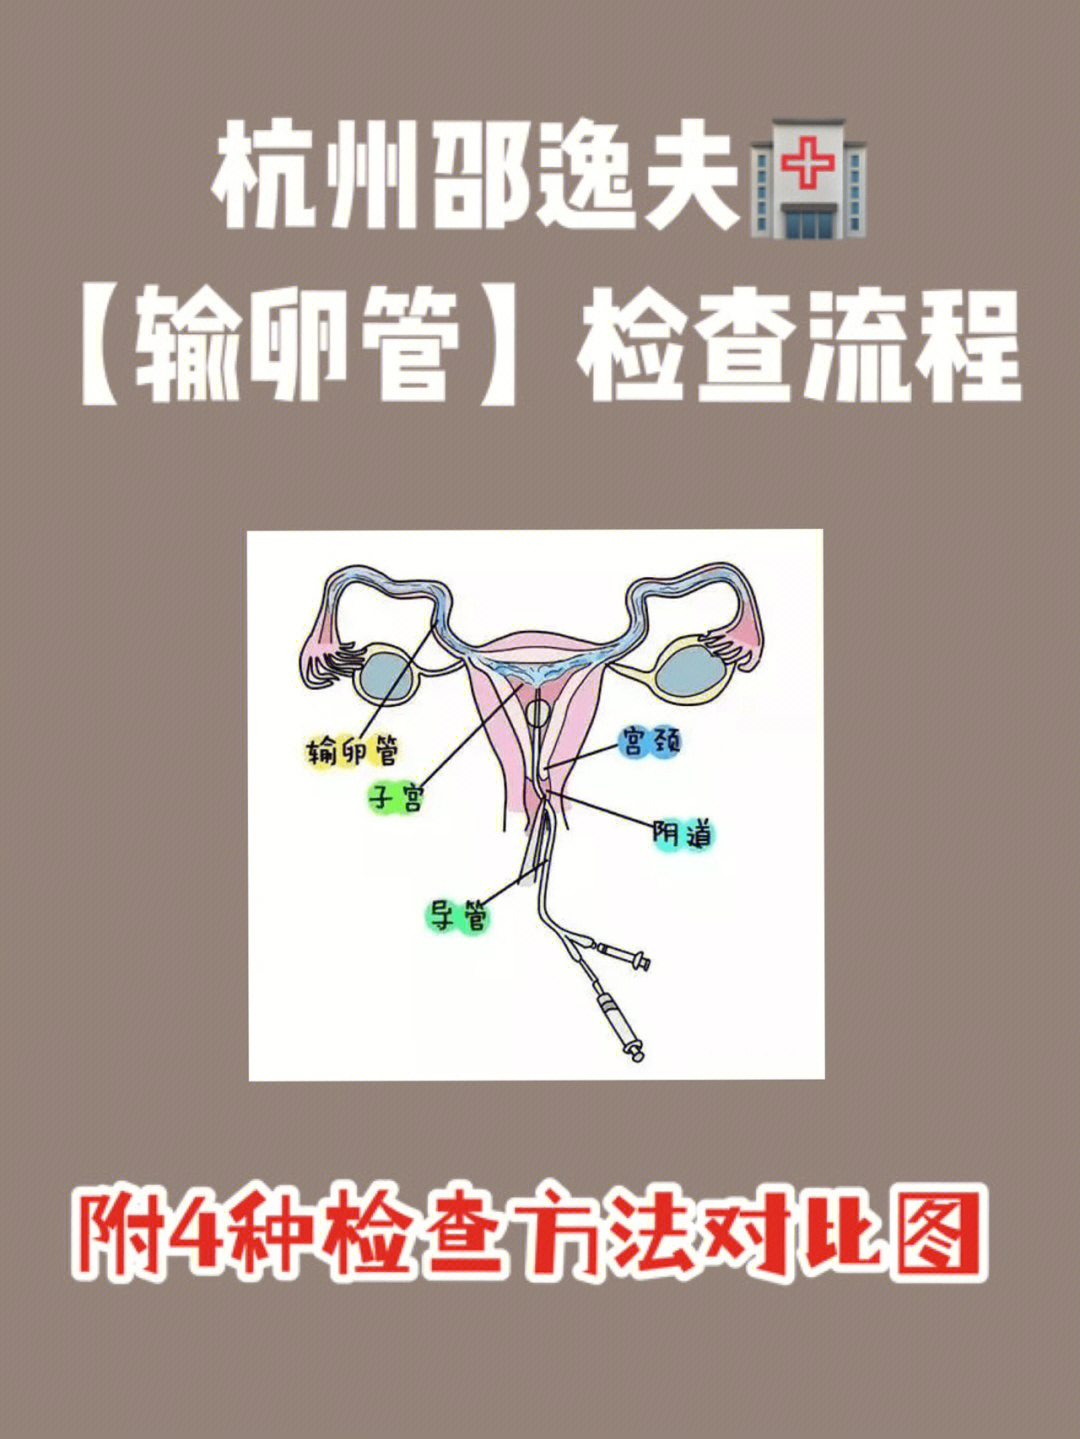 腹腔镜手术消毒顺序图图片